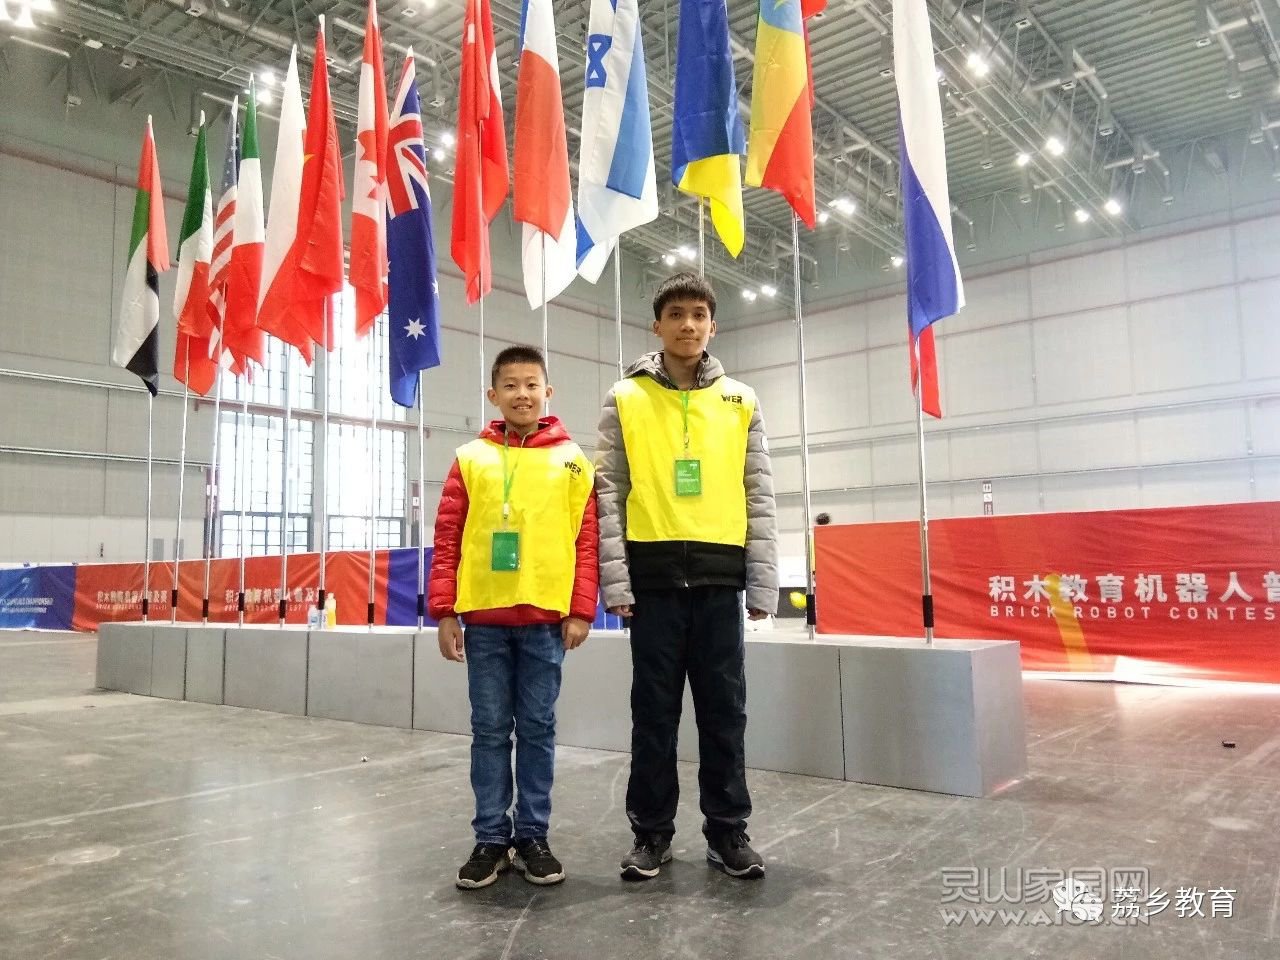 灵山县第三小学机器人队喜获2018年WER世界教育机器人锦标赛一等奖1.jpg